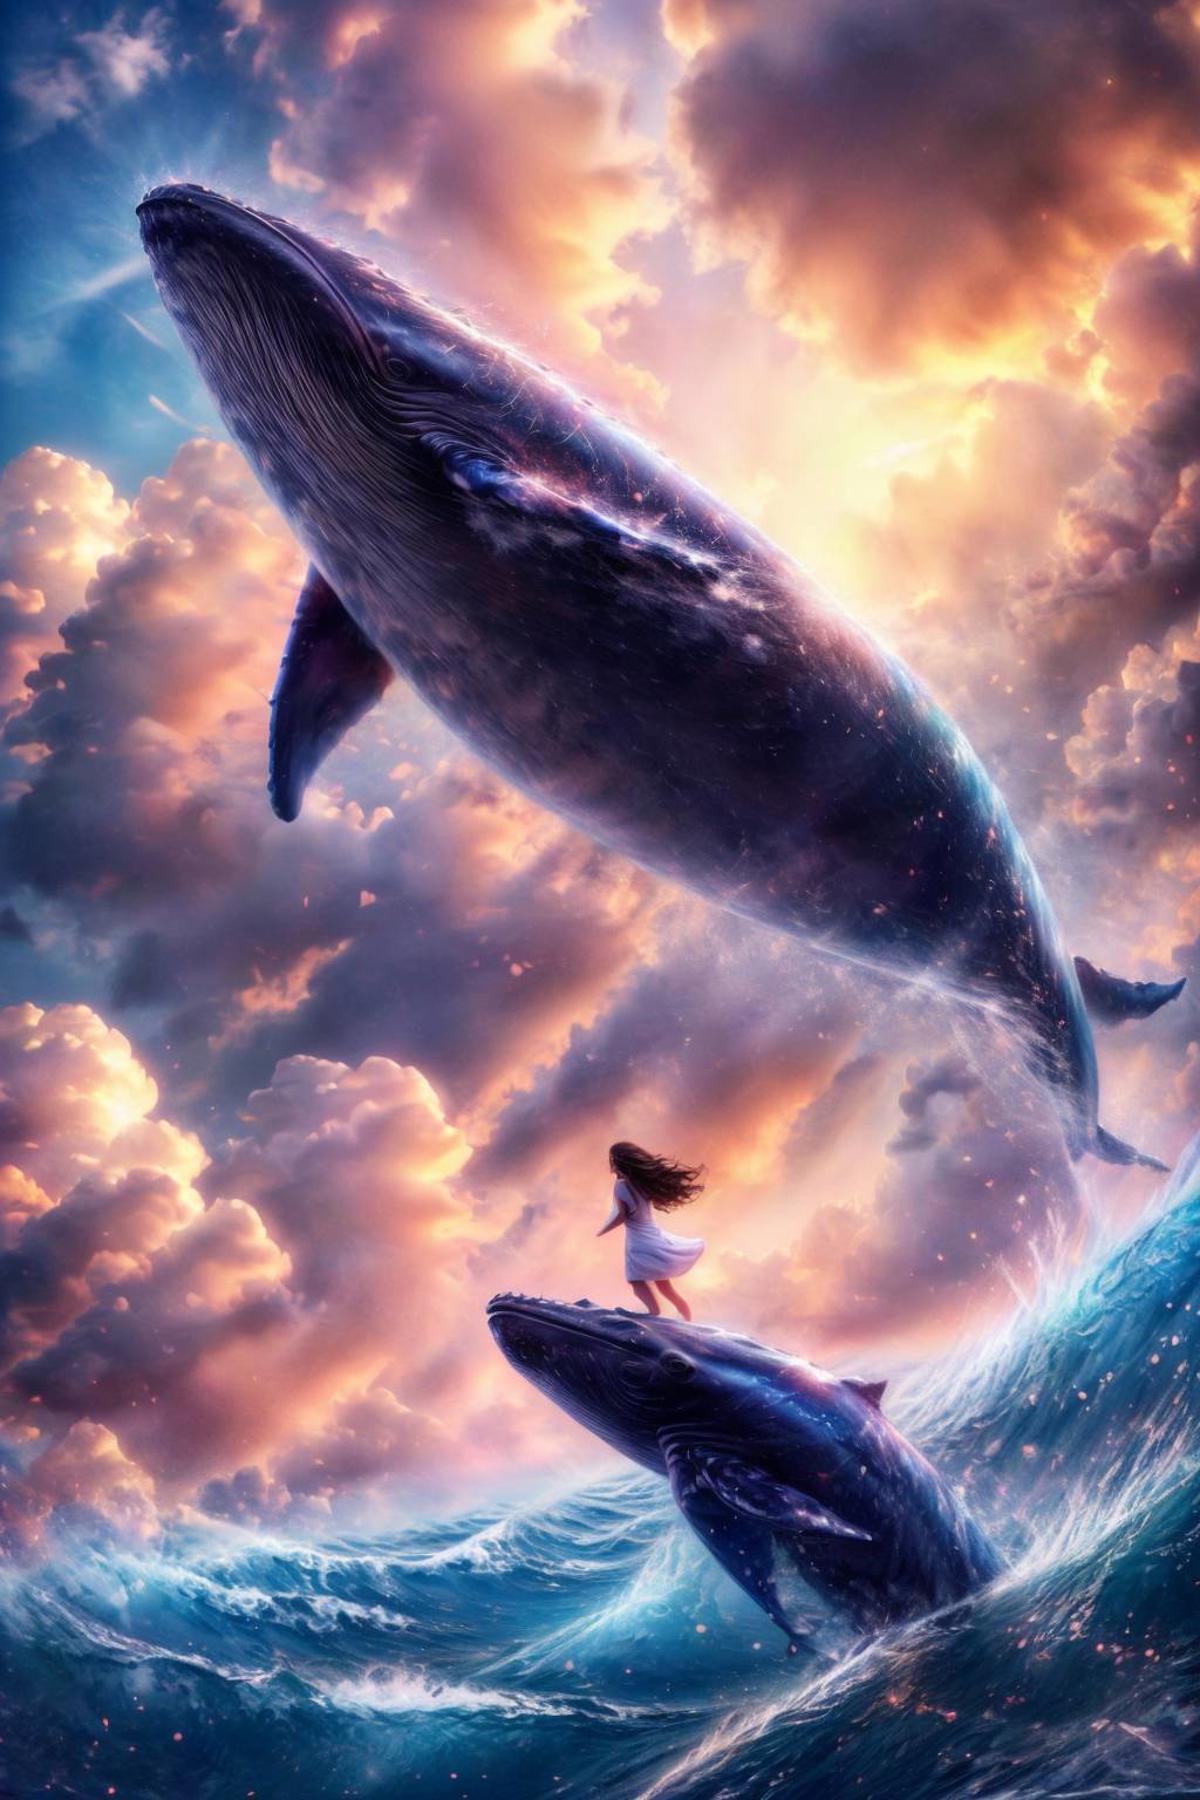 绪儿-飞鲸鱼 xuer Big whale image by slime77744784